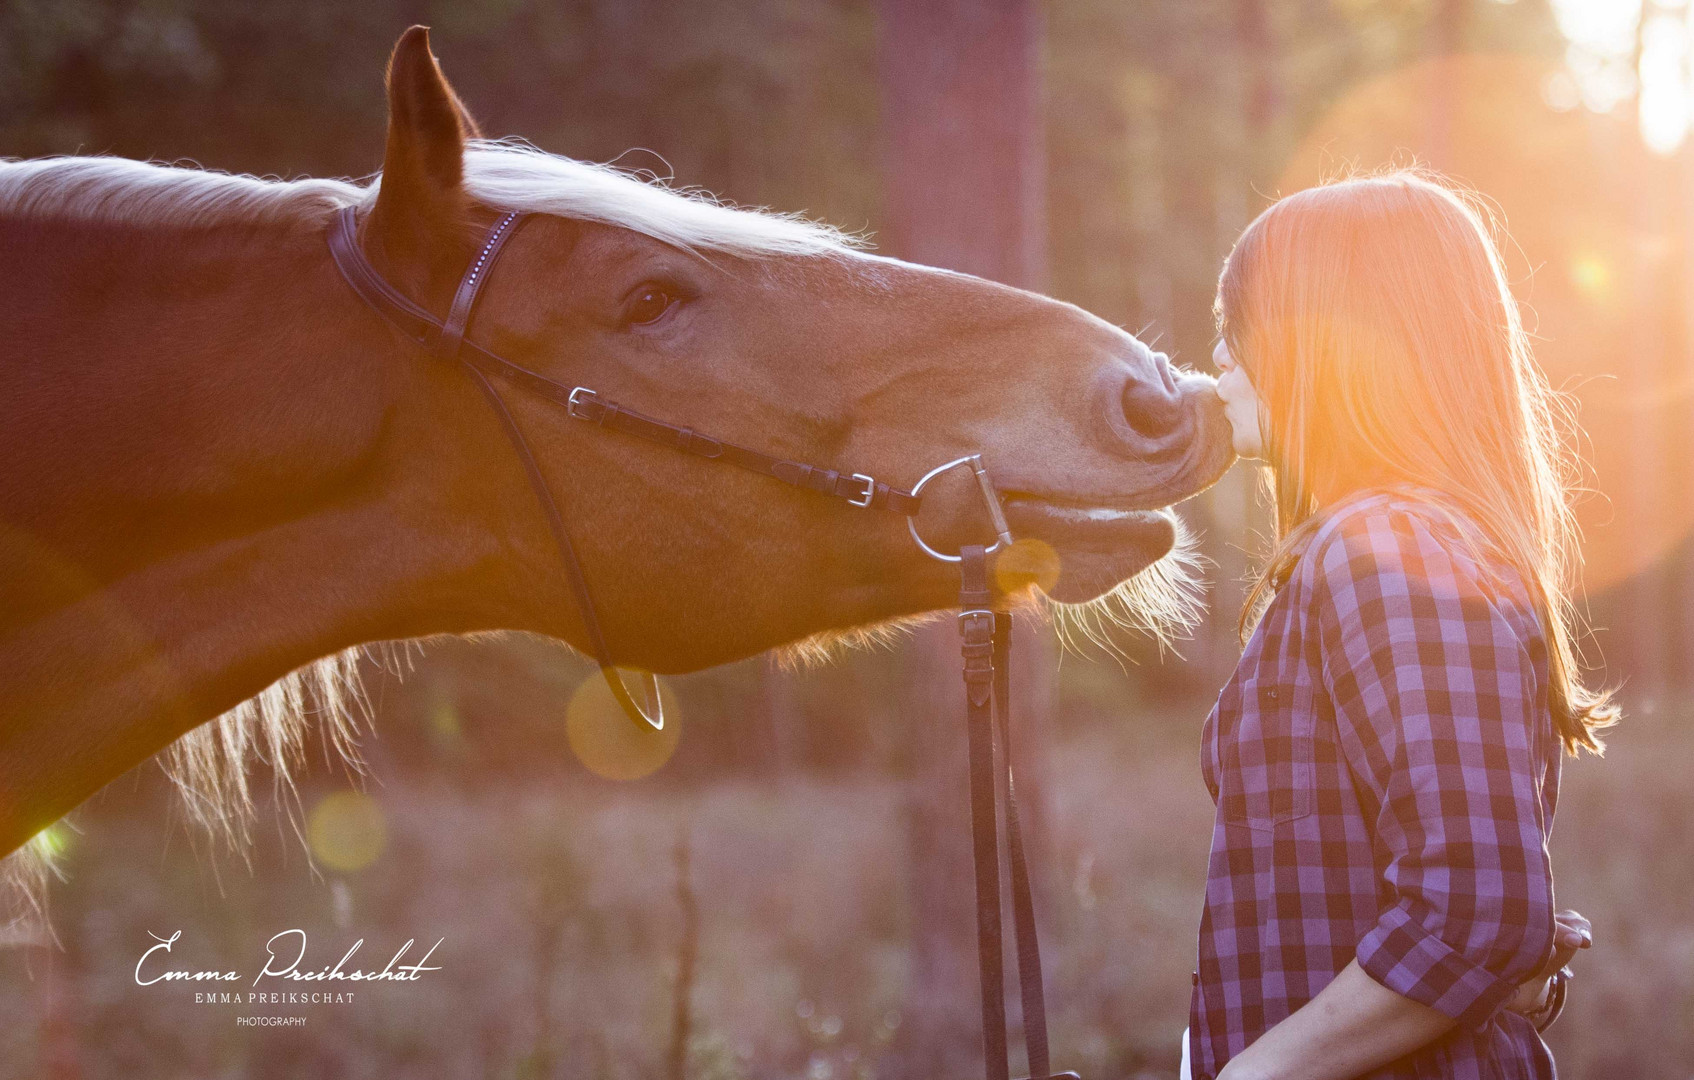 Pferd in der Herbstsonne